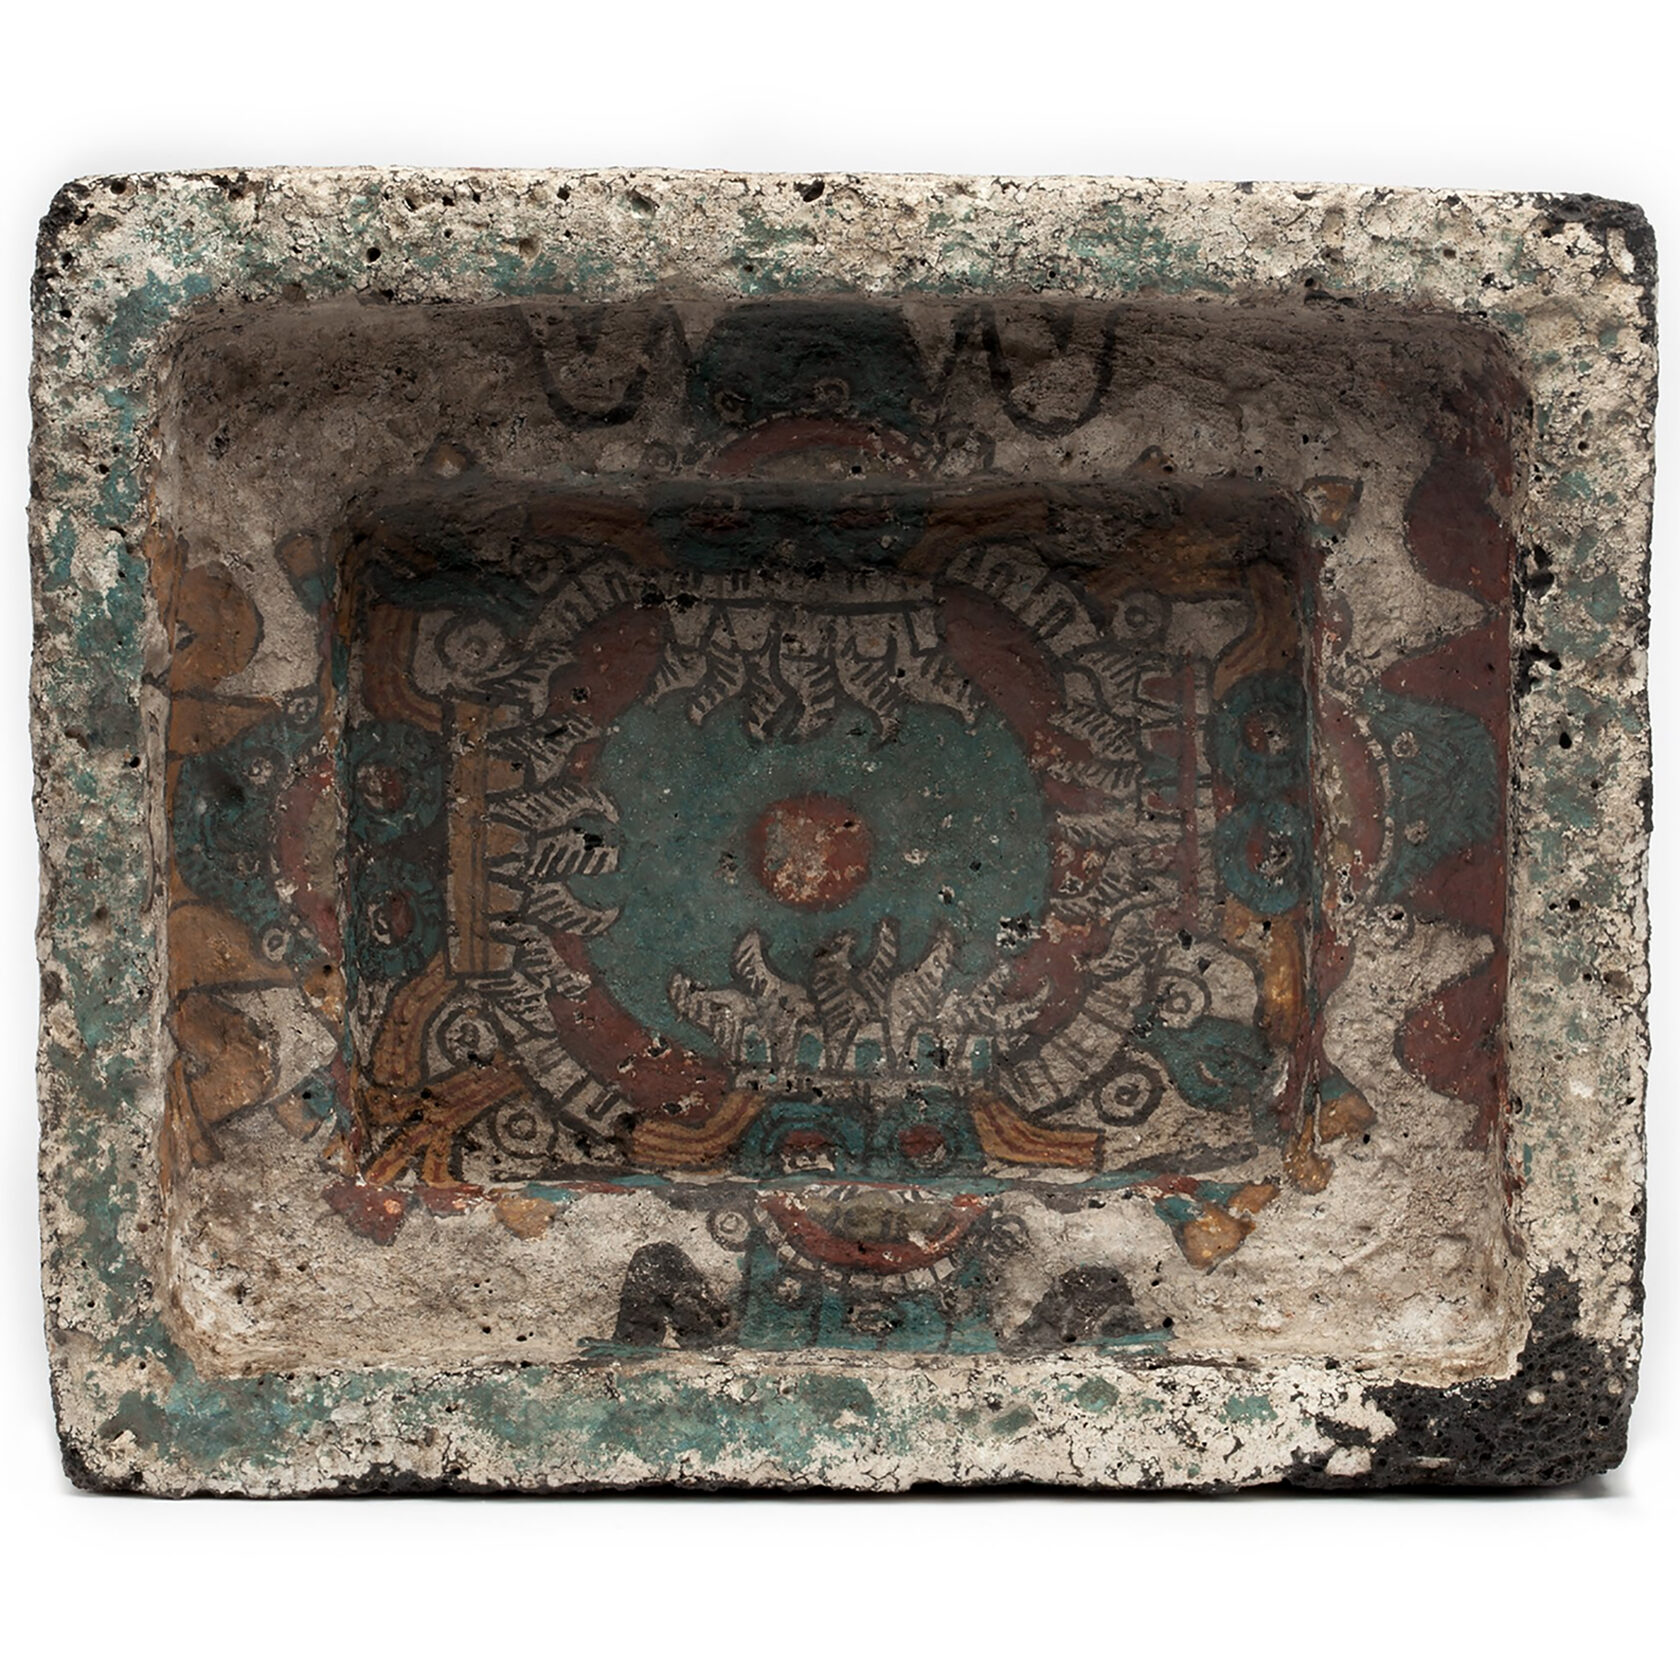 Фрагмент внутренней росписи каменного церемониального контейнера для подношений. Мексика, 1250-1500 гг. н.э. Коллекция Museo Nacional de Antropología, Мехико.